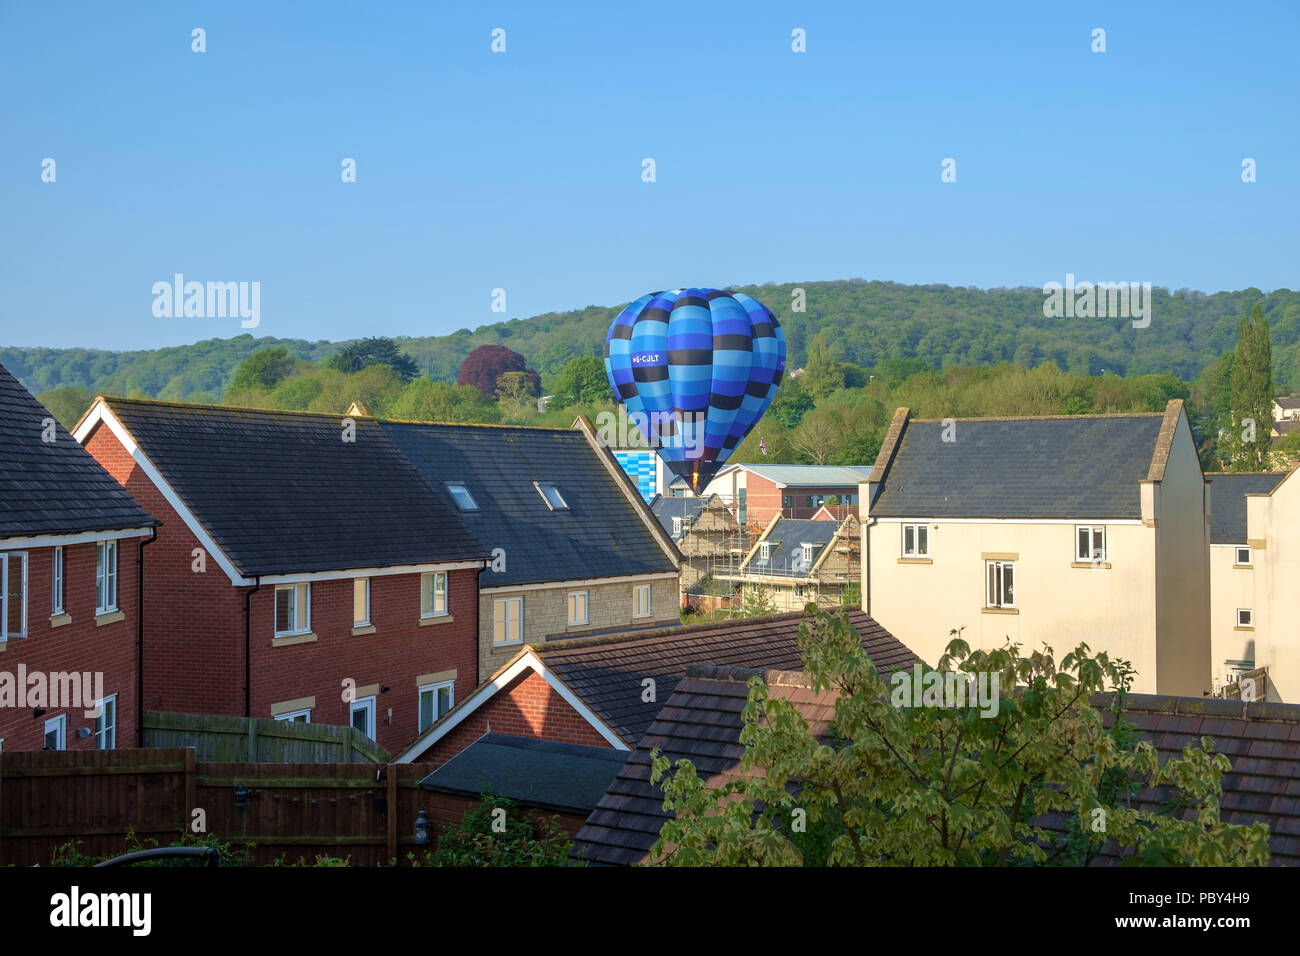 Dursley, Gloucestershire, Reino Unido - 7 de mayo de 2018: Un globo de aire caliente hace un aterrizaje imprevisto pero seguro en una urbanización calle en Dursley, Gloucestershire, Reino Unido. Foto de stock